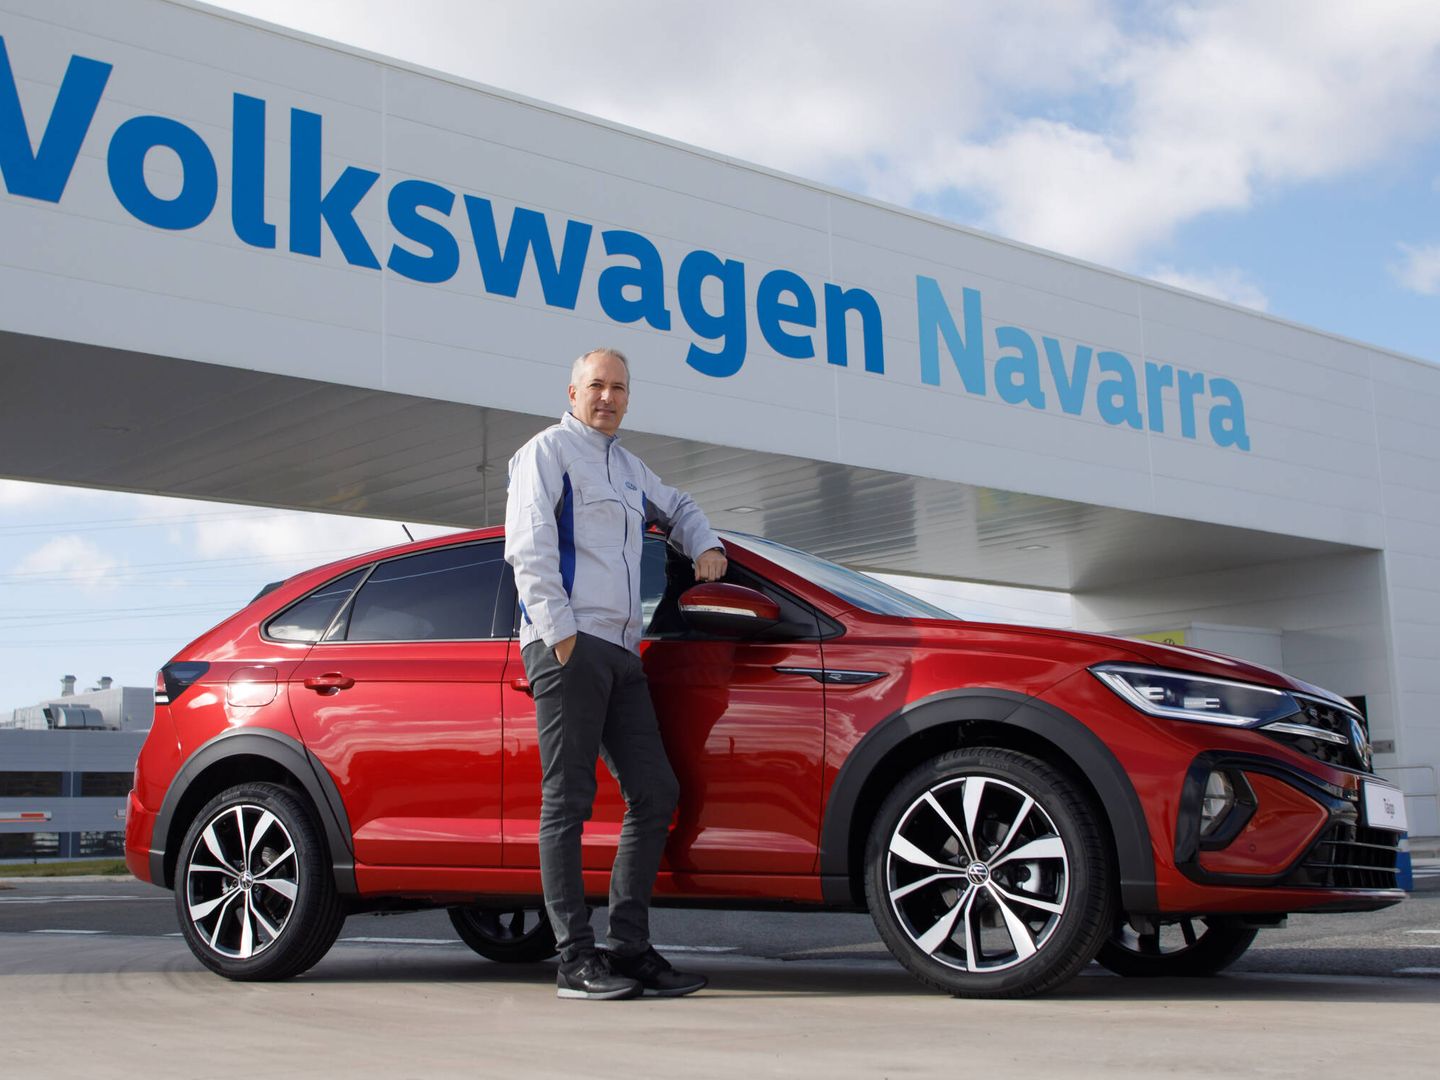 Markus Haupt es el director general de Volkswagen Navarra desde el pasado 1 de septiembre.